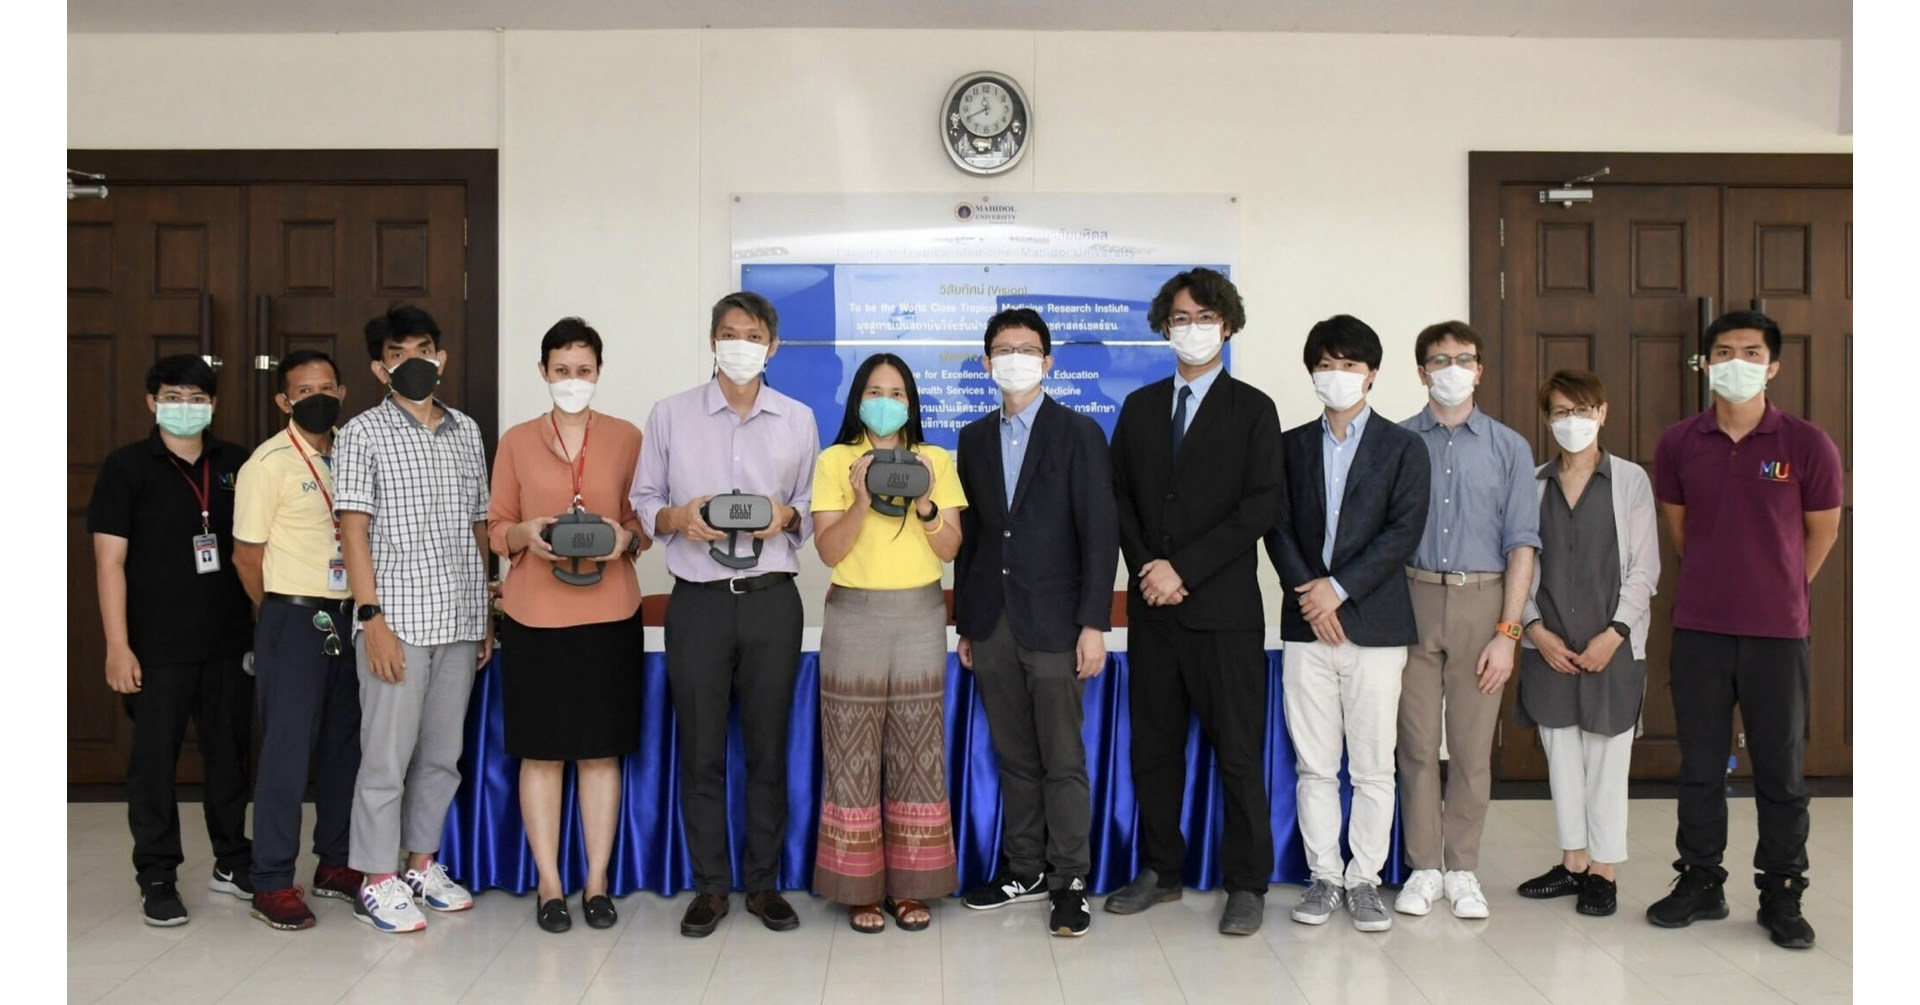 タイで最高の大学であるマヒドン大学が、Jolly Good の医療用 VR アプリを正式に採用しました